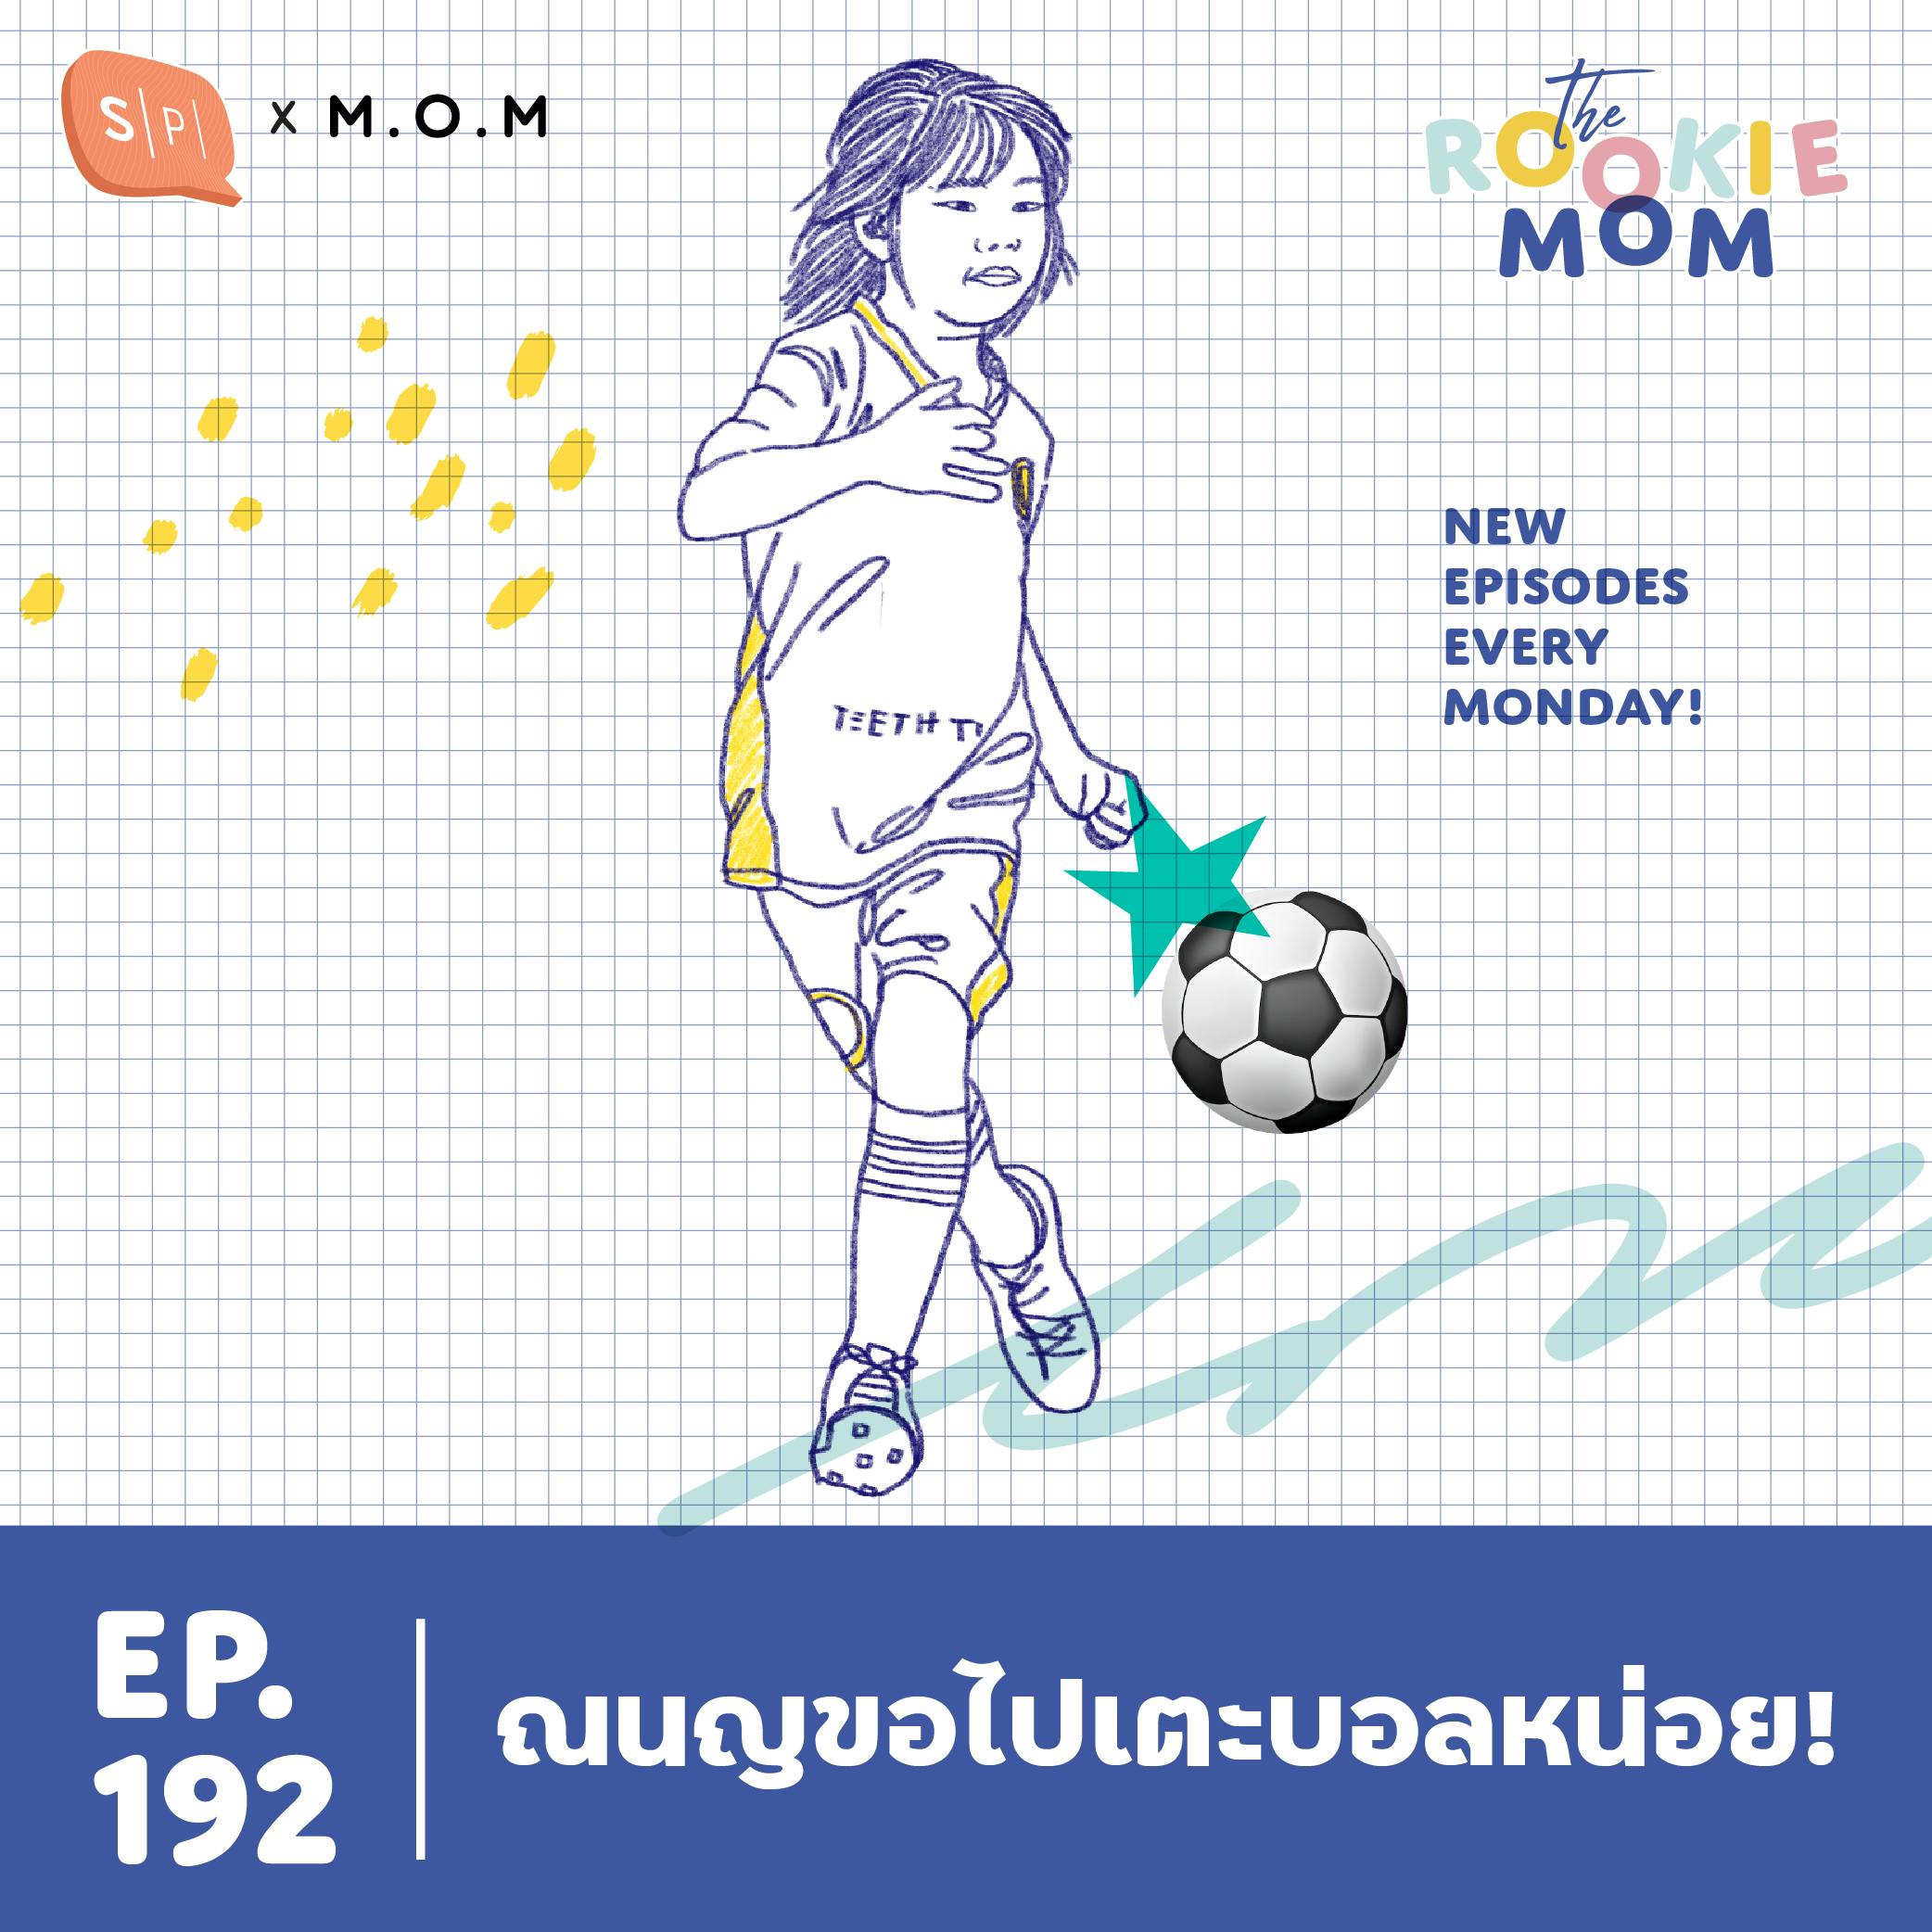 ณนญขอไปเตะบอลหน่อย! | The Rookie Mom EP192